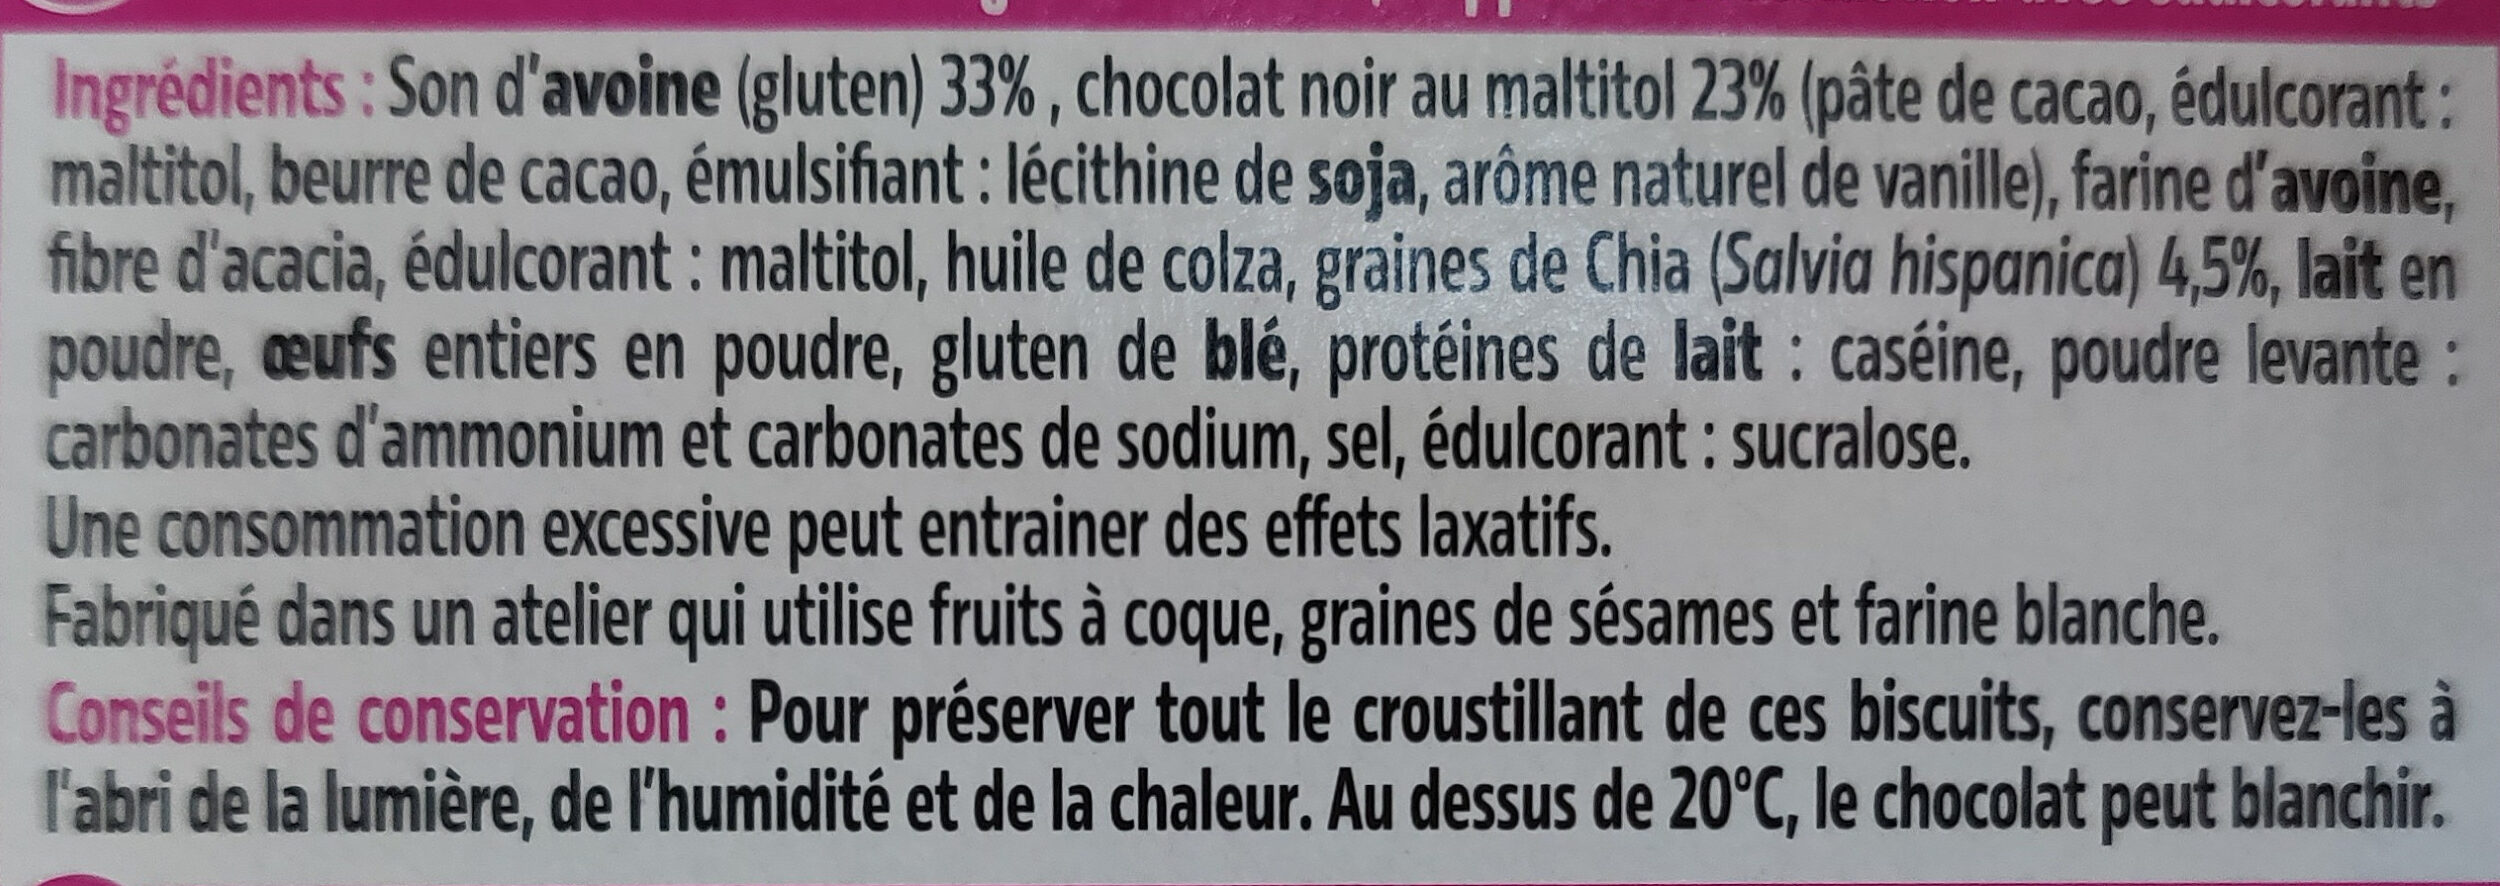 Biscuits nappés de chocolat - Ingredienser - fr